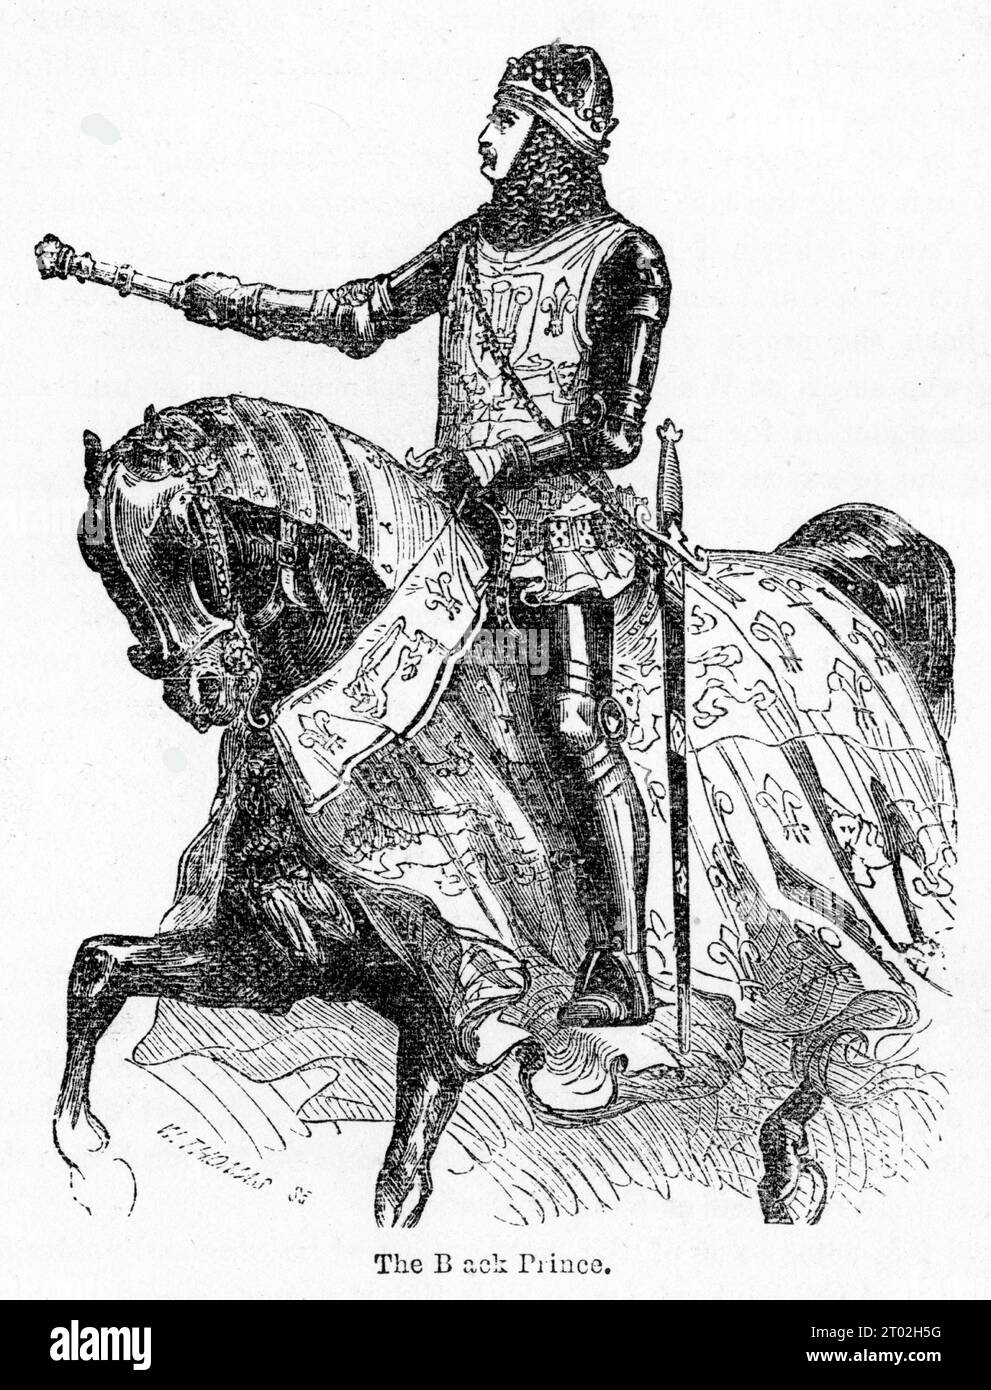 Gravure du Prince Noir, Édouard de Woodstock, considéré comme un modèle de chevalerie et l'un des plus grands chevaliers de son âge. Banque D'Images